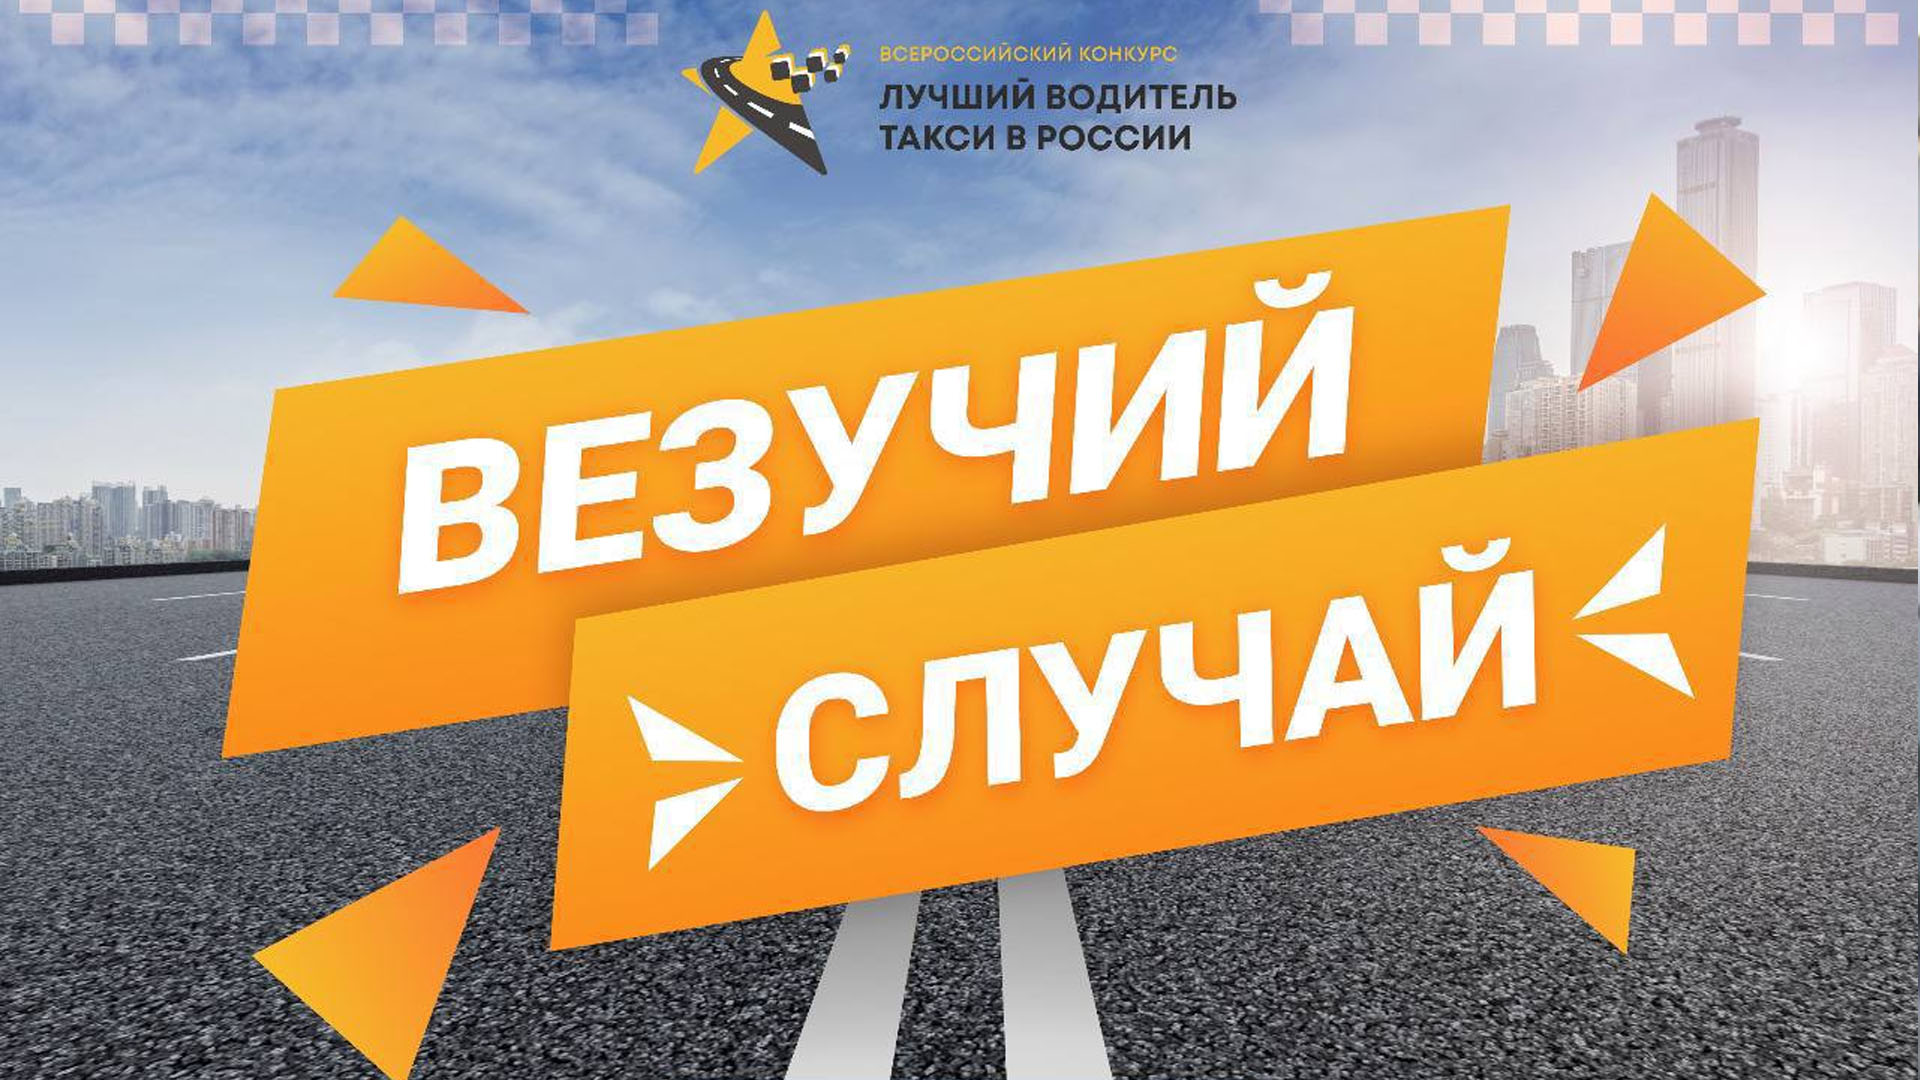 Хочешь стать участником финала конкурса «Лучший водитель такси в России» без сложных испытаний?